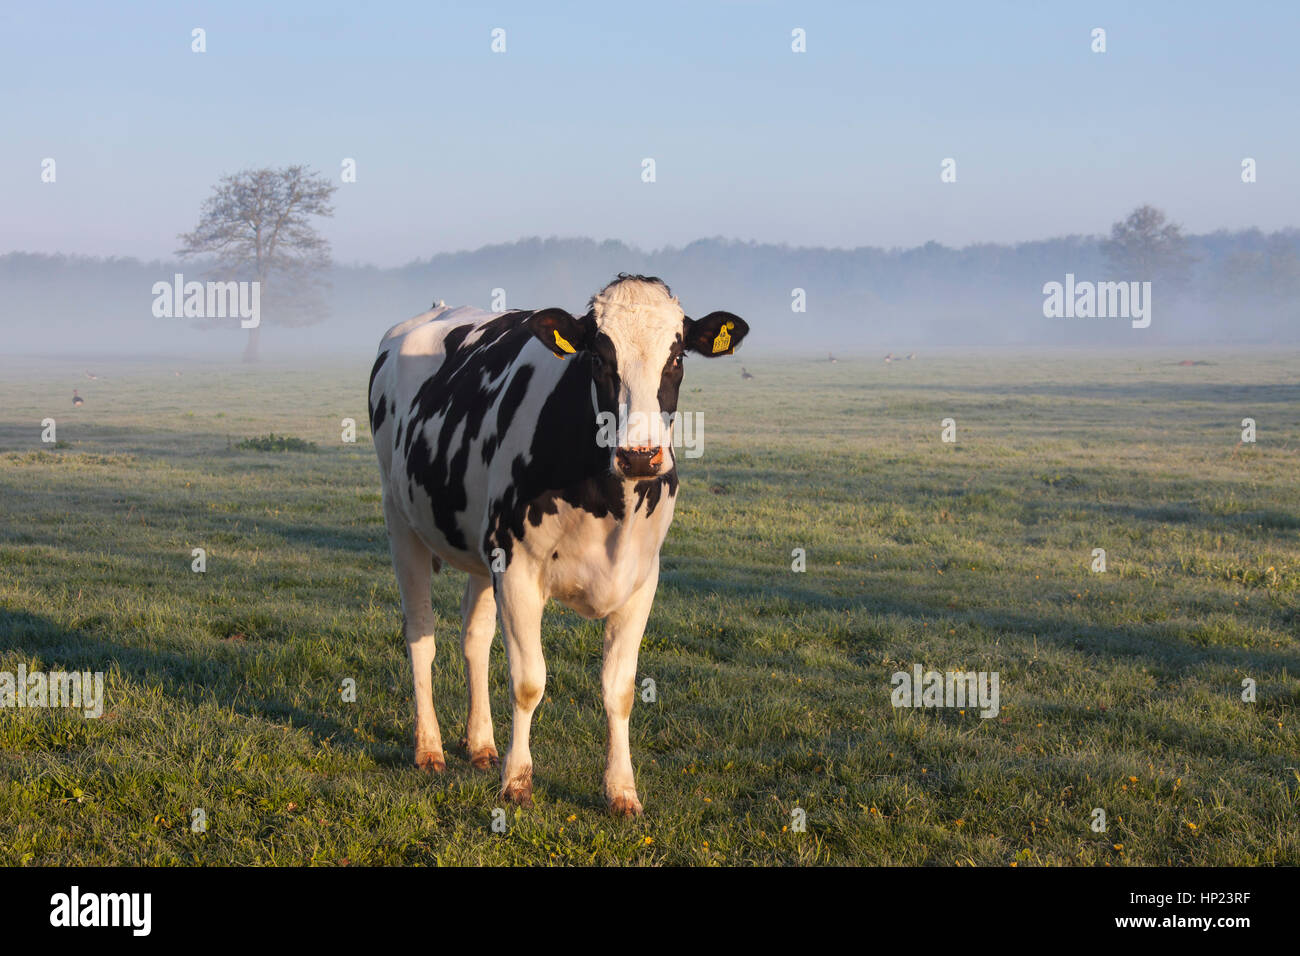 Friesian Holstein vache dans champ, race de bovins laitiers provenant de la provinces néerlandaises de Gueldre et frise Banque D'Images